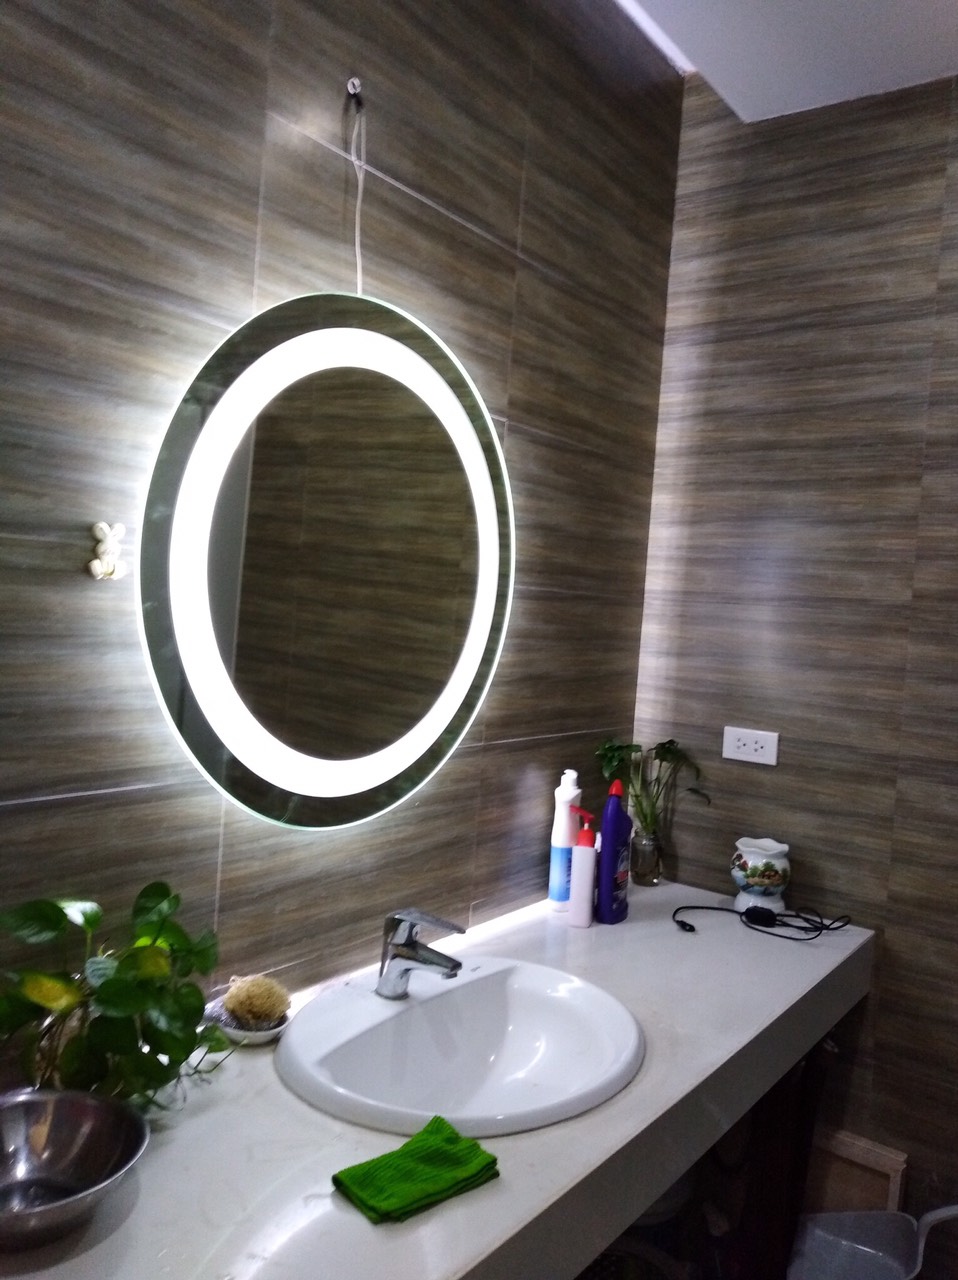 Làm mới phòng tắm của bạn với gương phòng tắm bằng đèn LED Milor 60cm. Với chất lượng đảm bảo và giá cả phải chăng, sản phẩm sẽ làm cho phòng tắm của bạn trở nên sáng sủa và tiện nghi hơn bao giờ hết. Những chiếc đèn LED sáng tạo giúp cho mắt bạn không bị mỏi khi sử dụng trong thời gian dài và tạo nên một không gian phòng tắm đầy phóng khoáng.